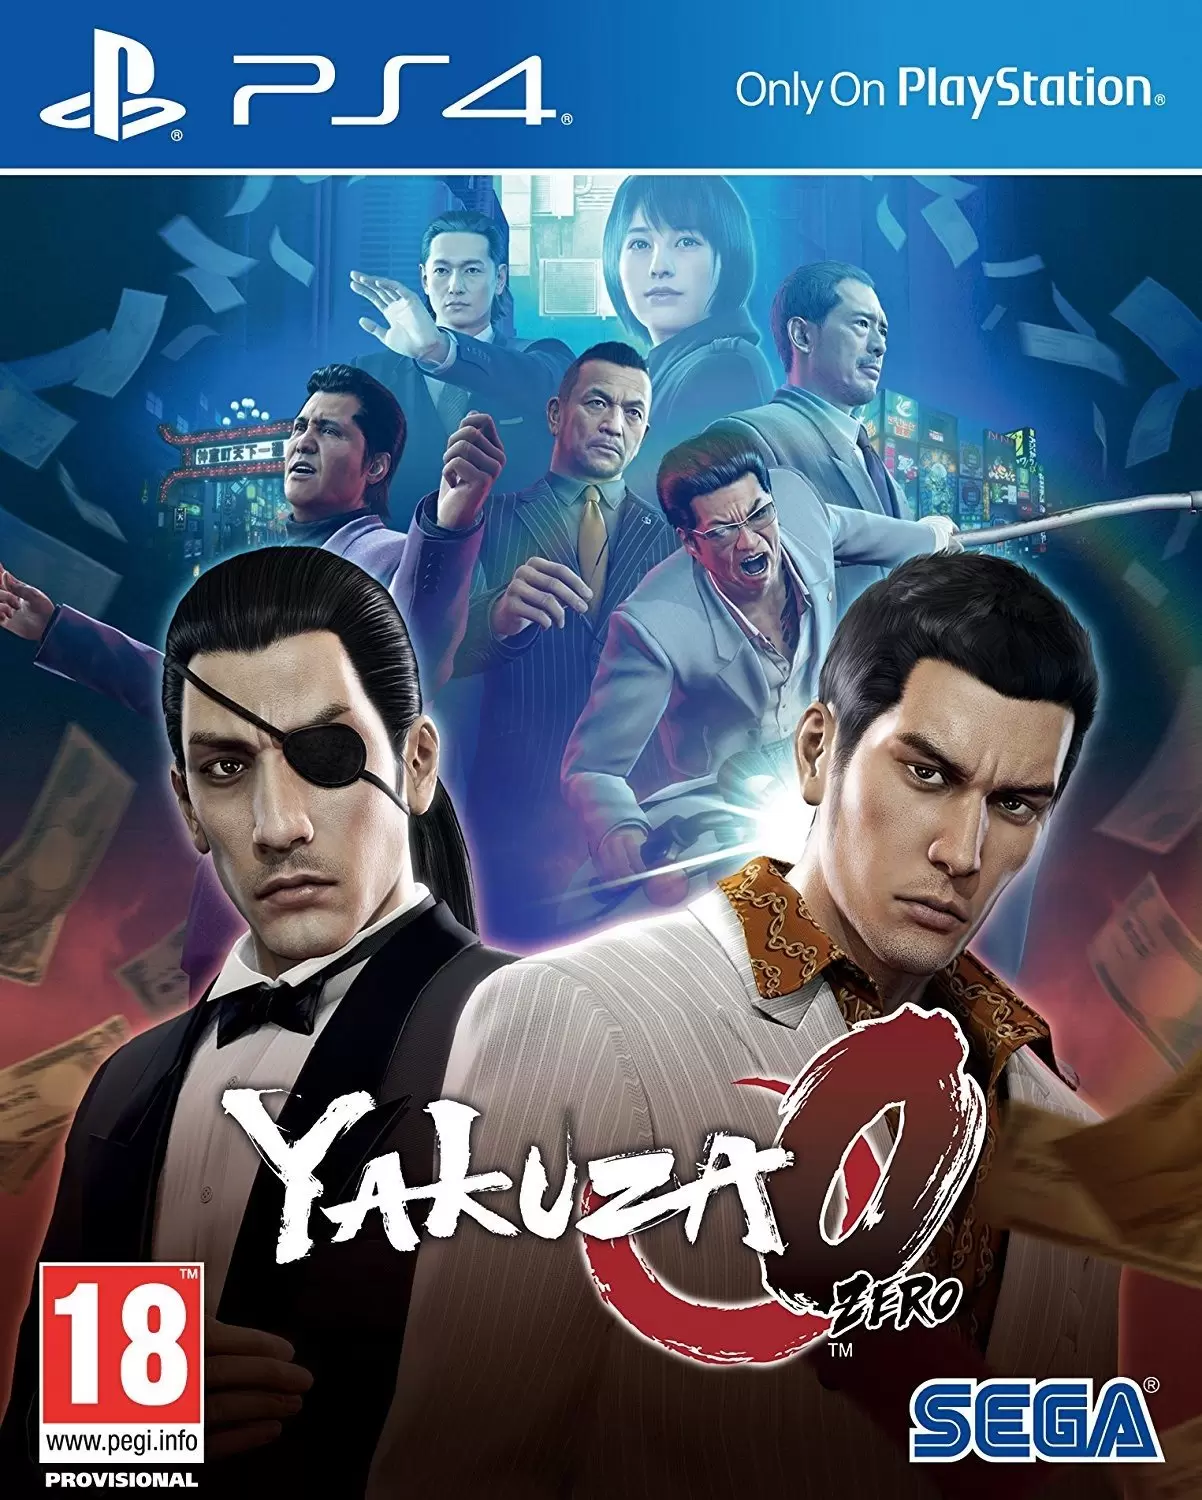 PS4 Games - Yakuza 0